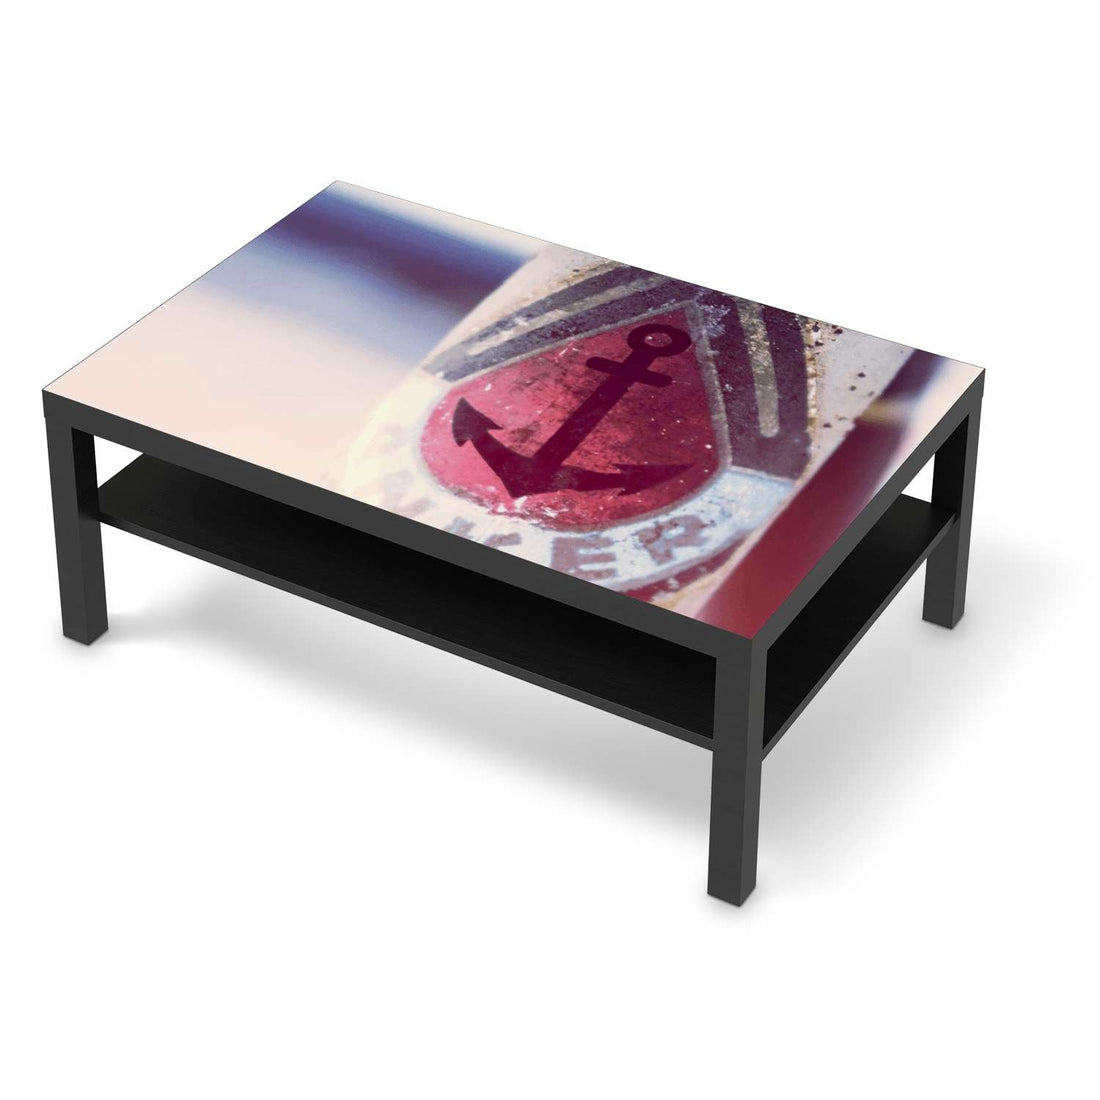 Klebefolie Anker 2 - IKEA Lack Tisch 118x78 cm - schwarz